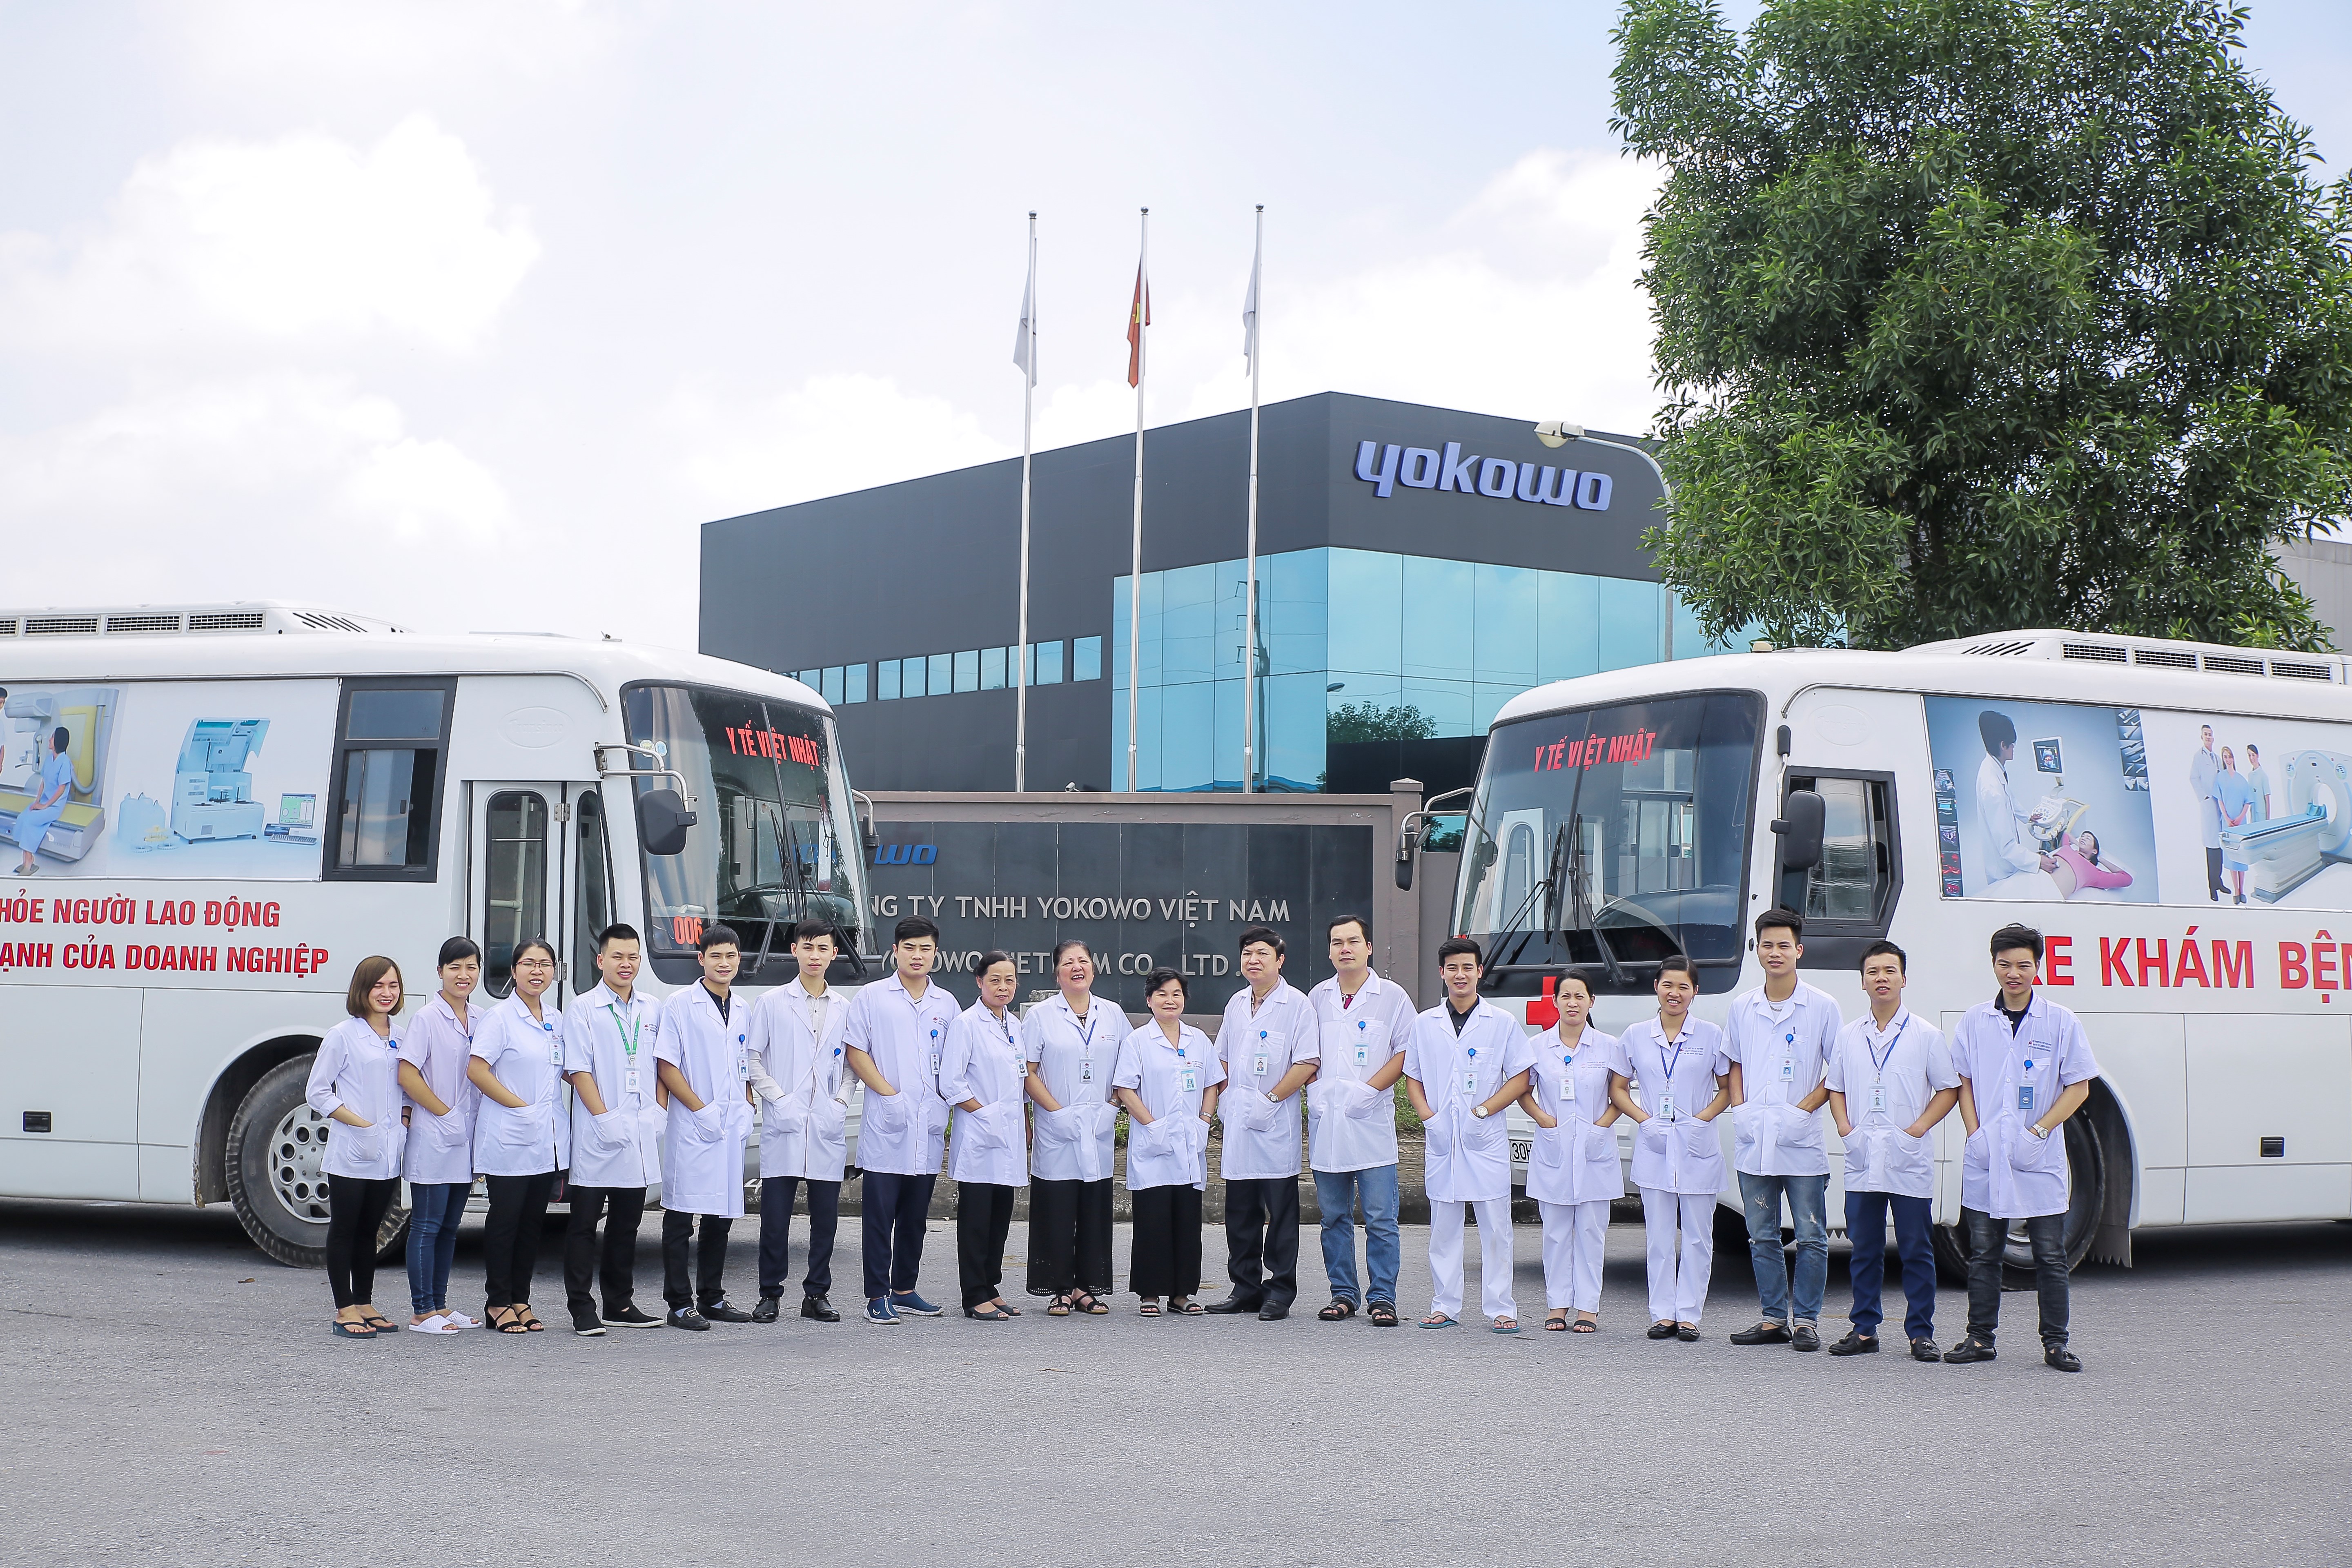 Dịch vụ khám sức khỏe lưu động là một trong những thế mạnh vượt trội của JVC với số lượng xe khám lưu động hiện hữu lớn nhất Việt Nam